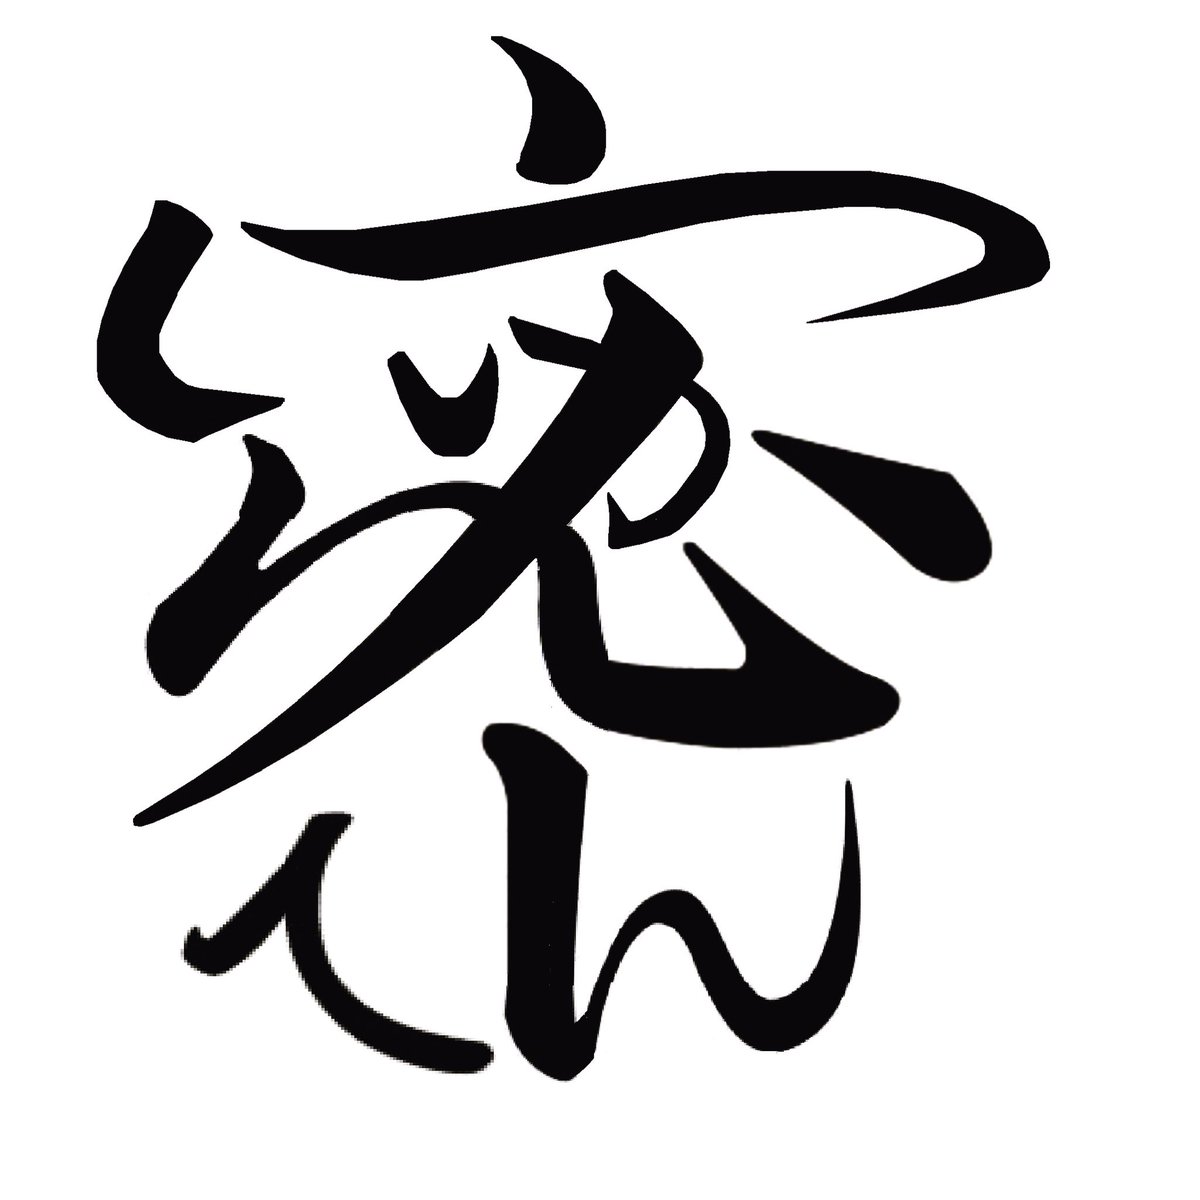 腕立てマニア 今年の漢字 密 この状況も いつか進展 することに期待して 平仮名 いつかしんてん にて漢字 密 を書きました 今年の漢字 密 いつか進展 いつかしんてん ことば漢字 言葉漢字 おもしろ漢字